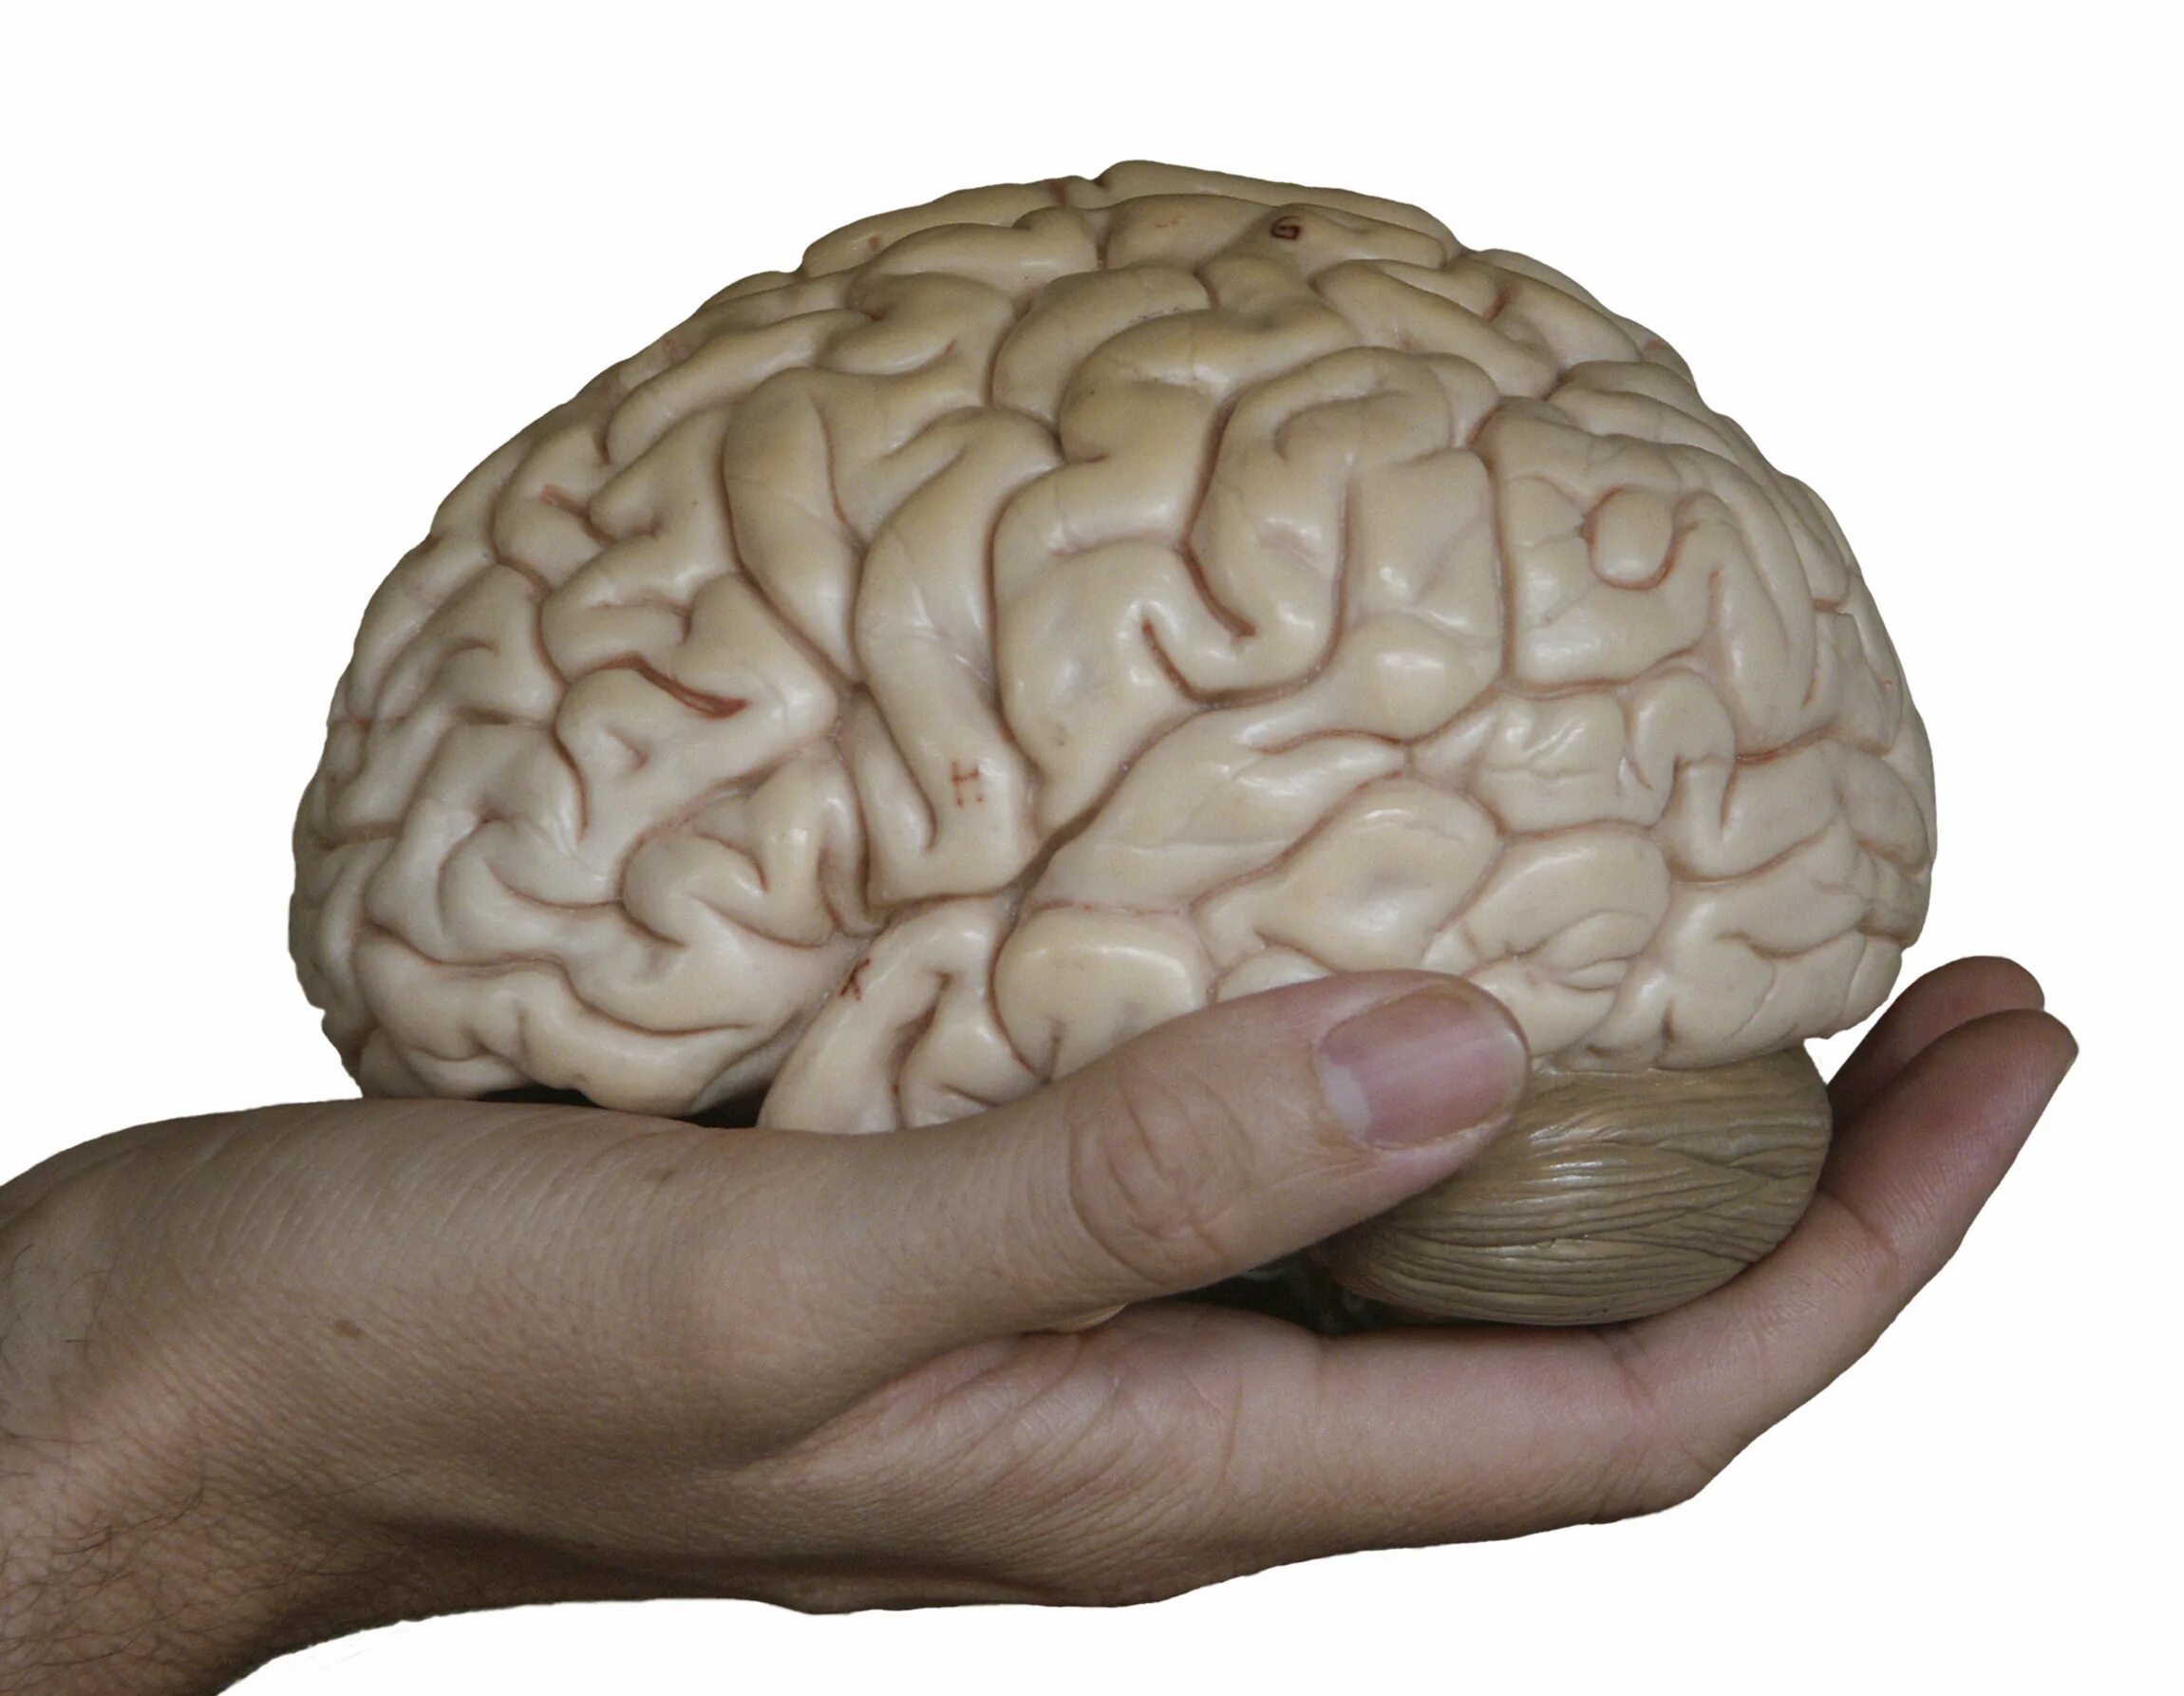 Картинка про мозг. Мозг в руках.